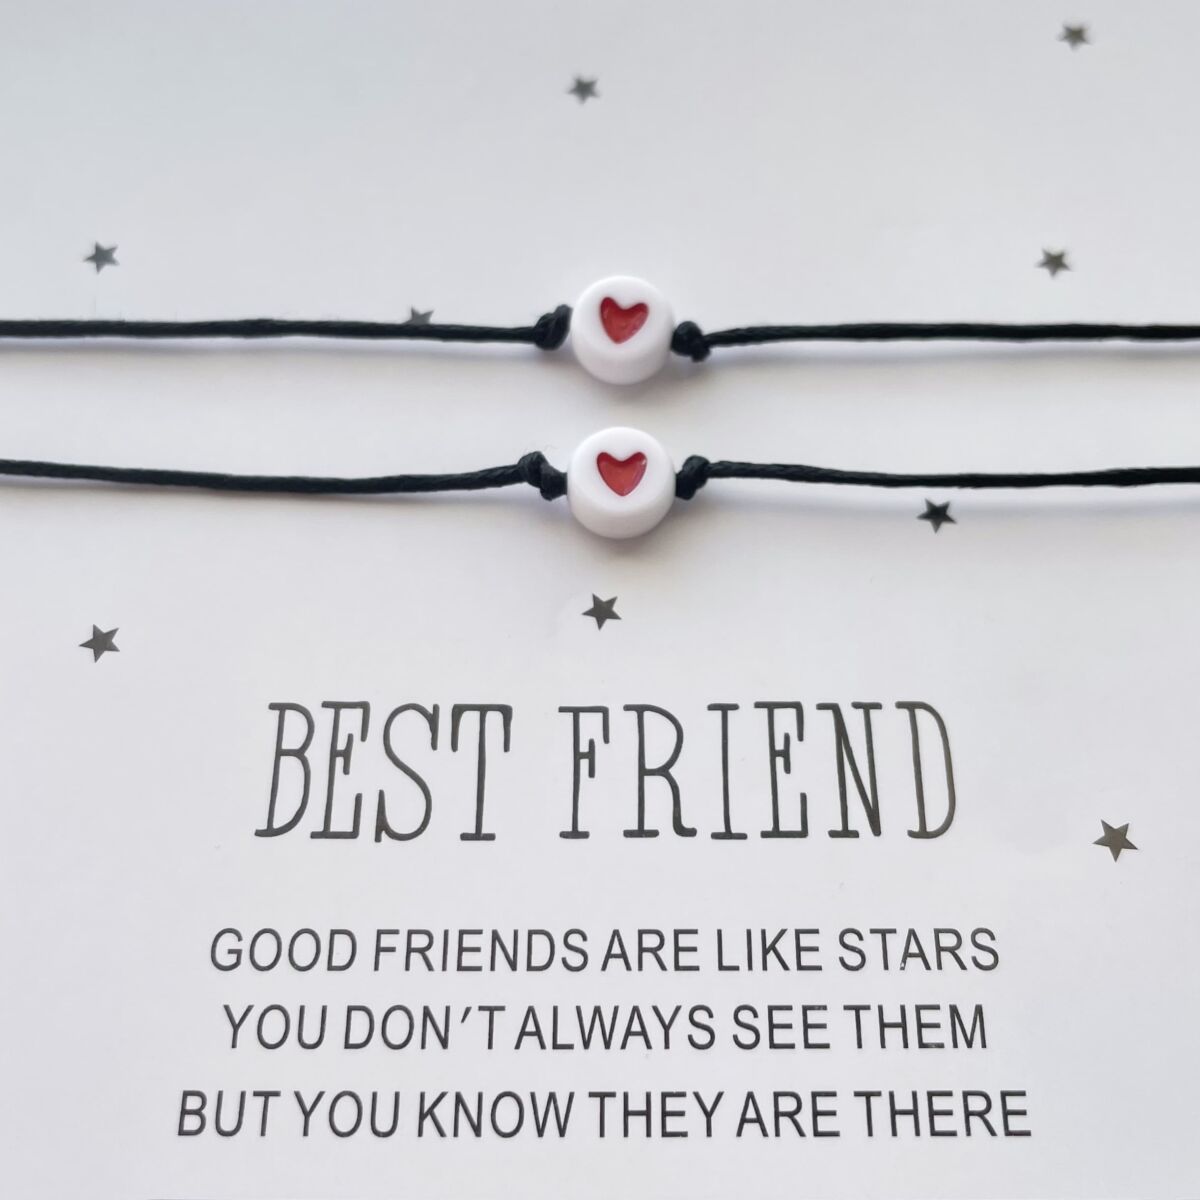 Best friend szíves barátság karkötő szett